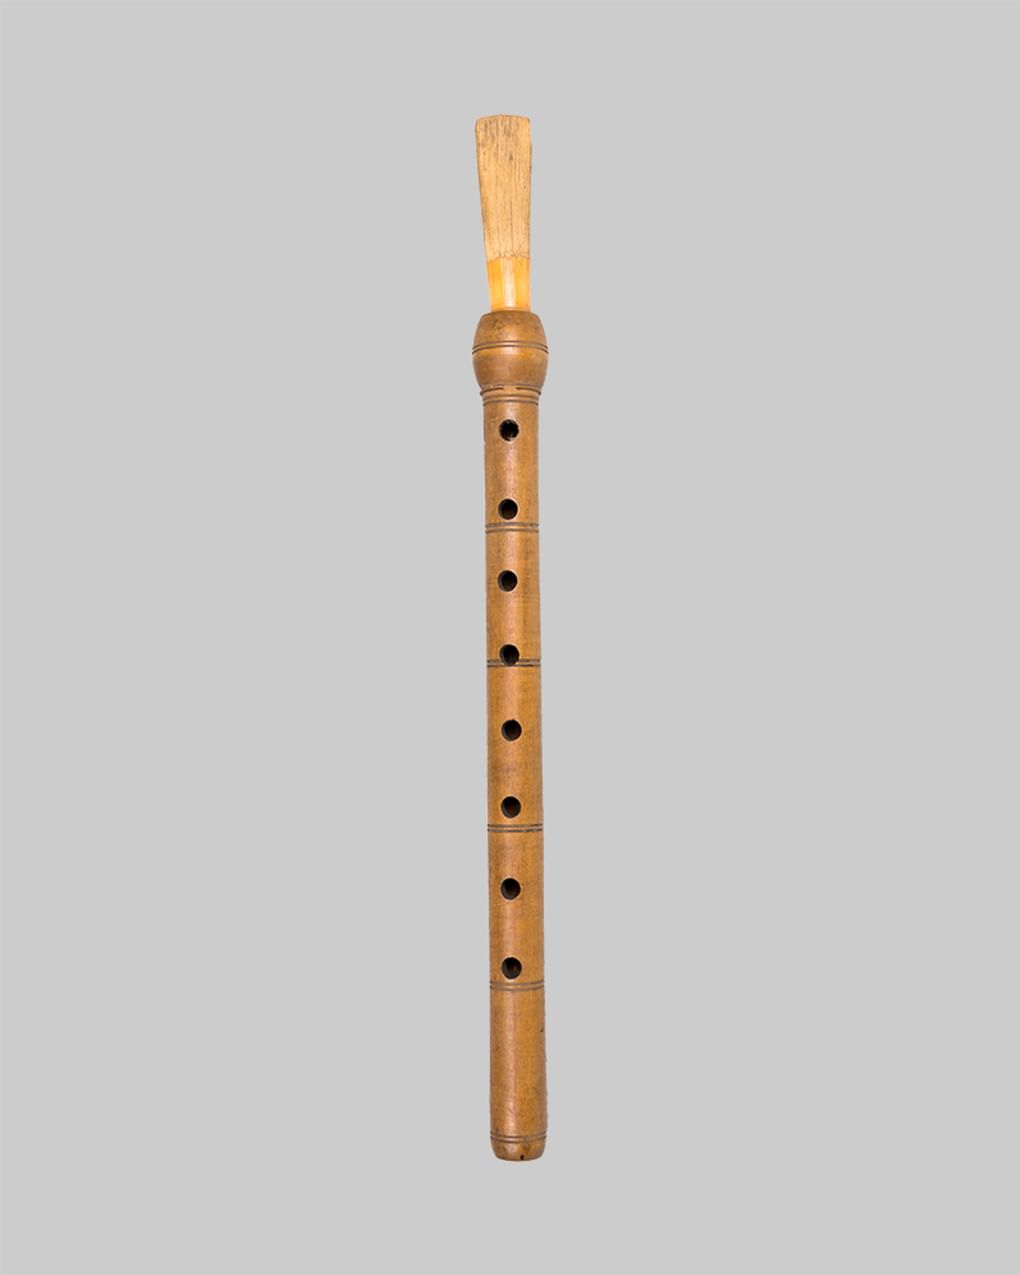 Ясти балабан (баламан). Фотография предоставлена Российским национальным музеем музыки, Москва